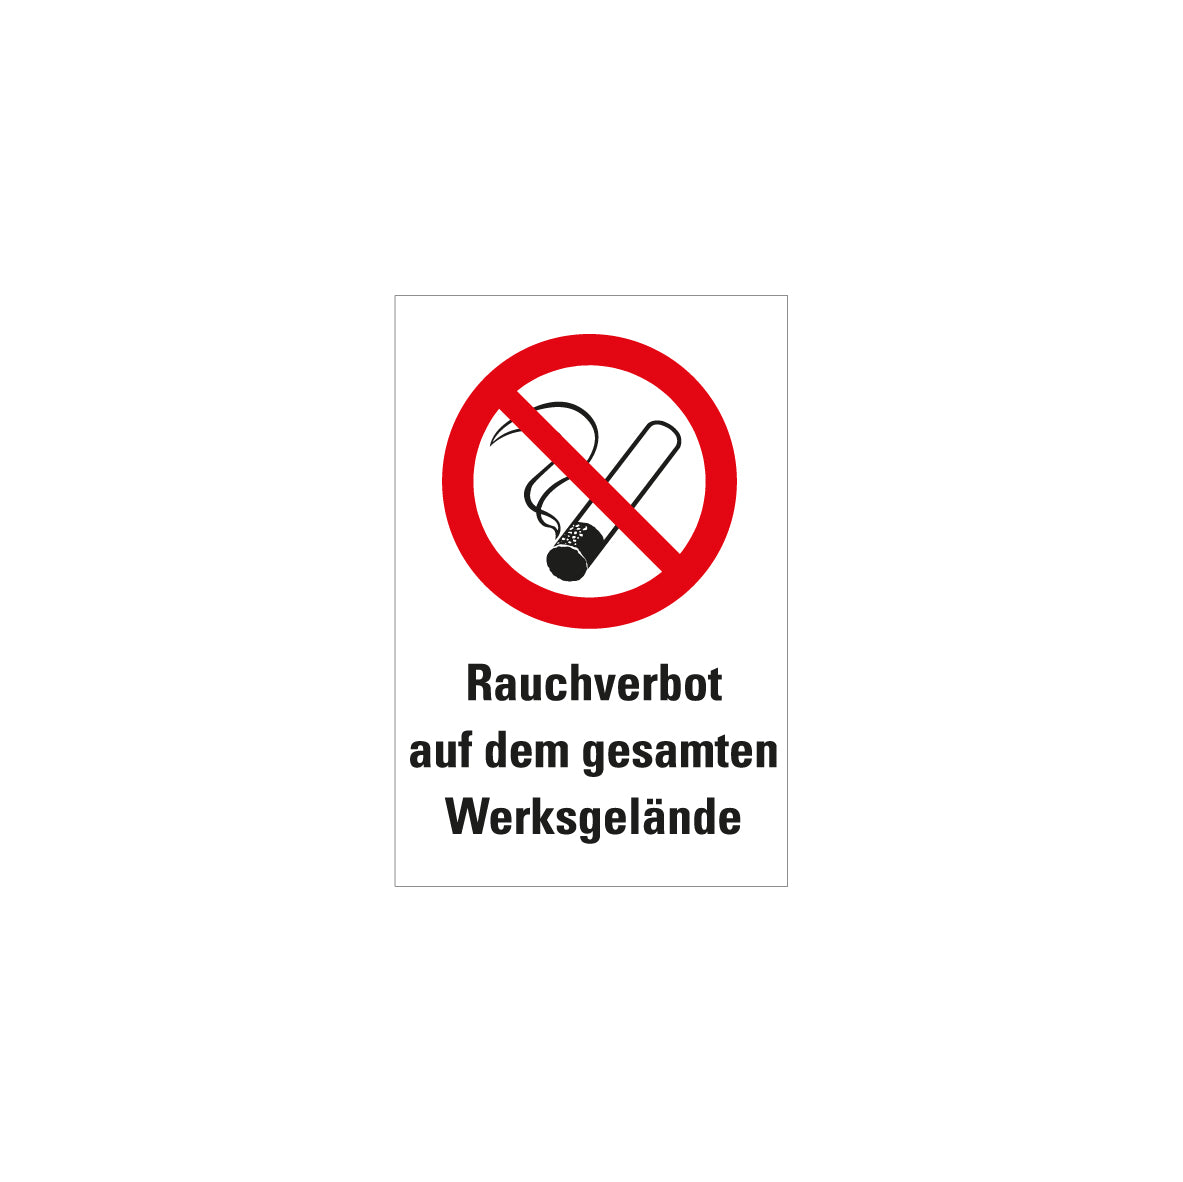 6.V-129 Rauchen verboten, Verbotszeichen, Praxisbewährt